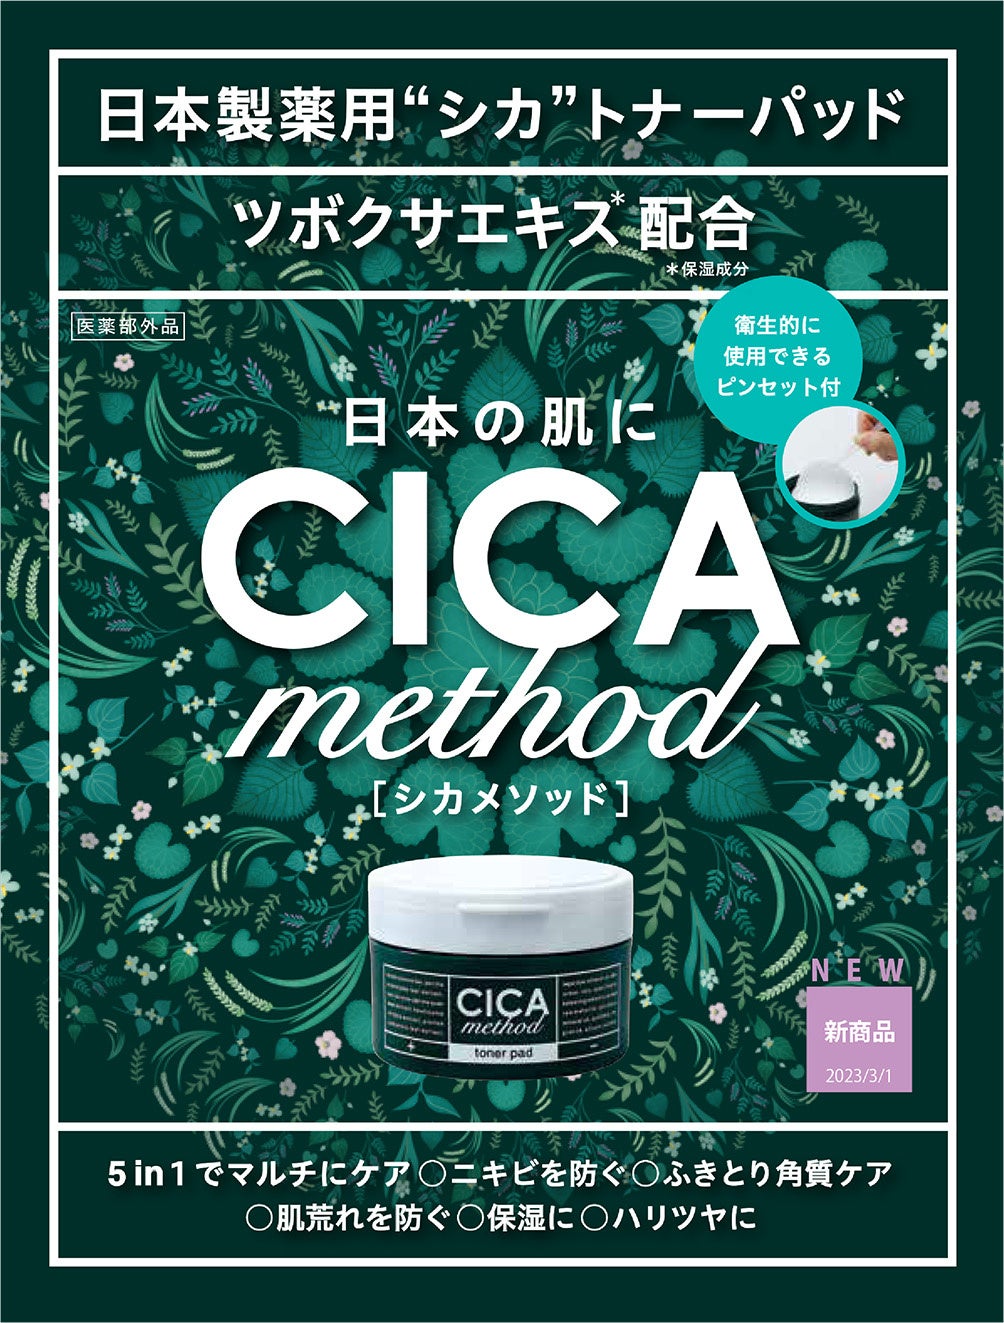 日本製シカとして人気の“CICA method”から薬用トナーパッドが登場！「CICA method TONER PAD」を3月1日より発売